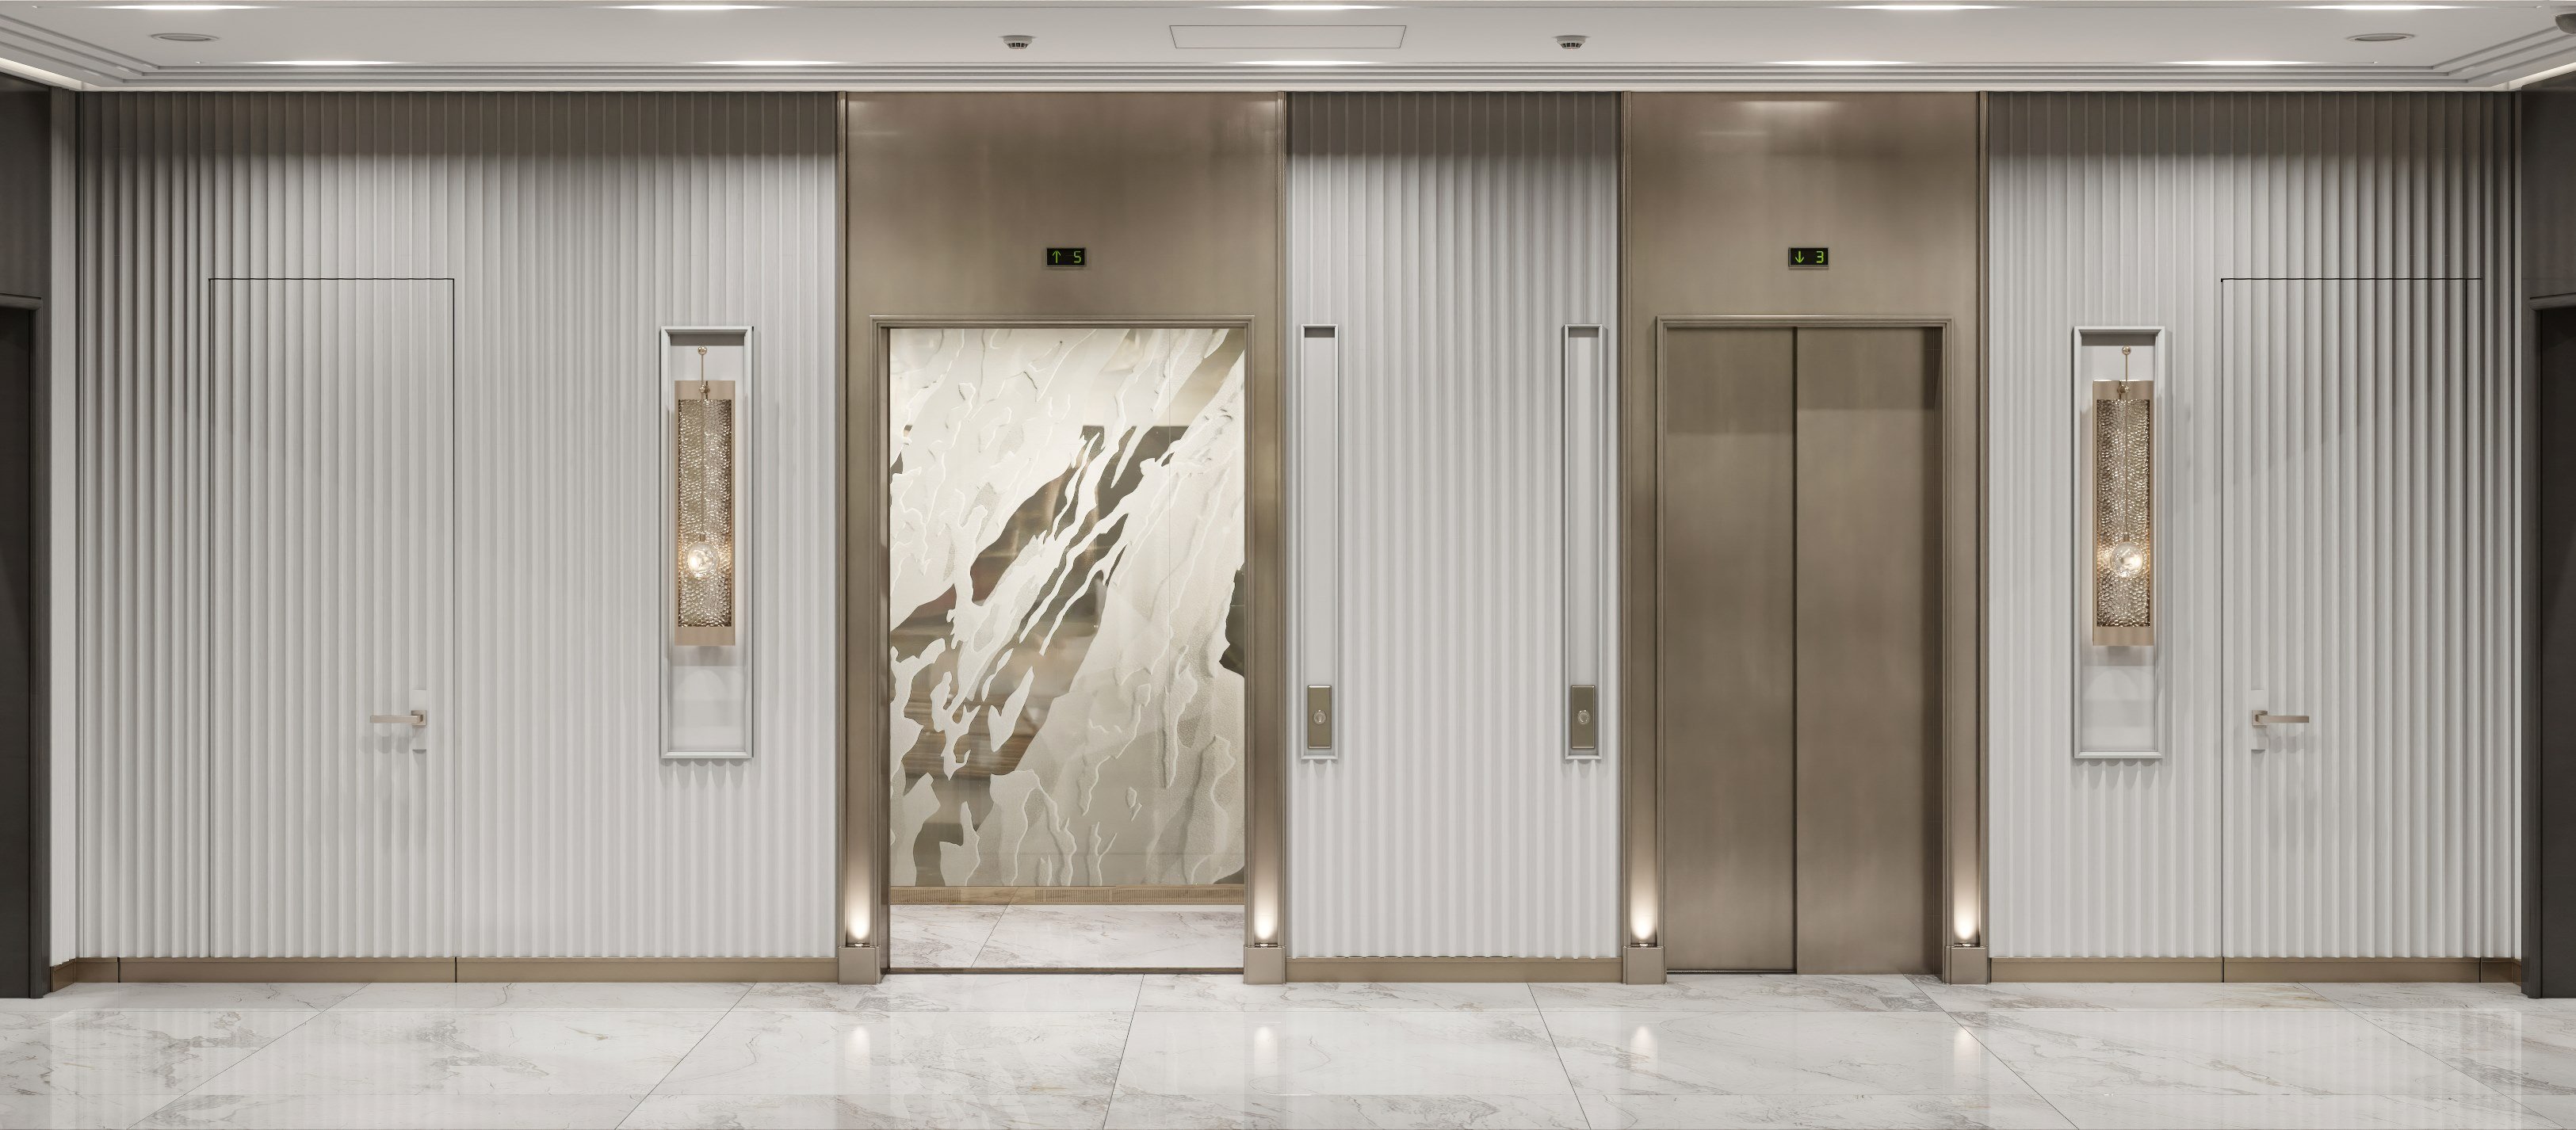 Premium passenger elevators